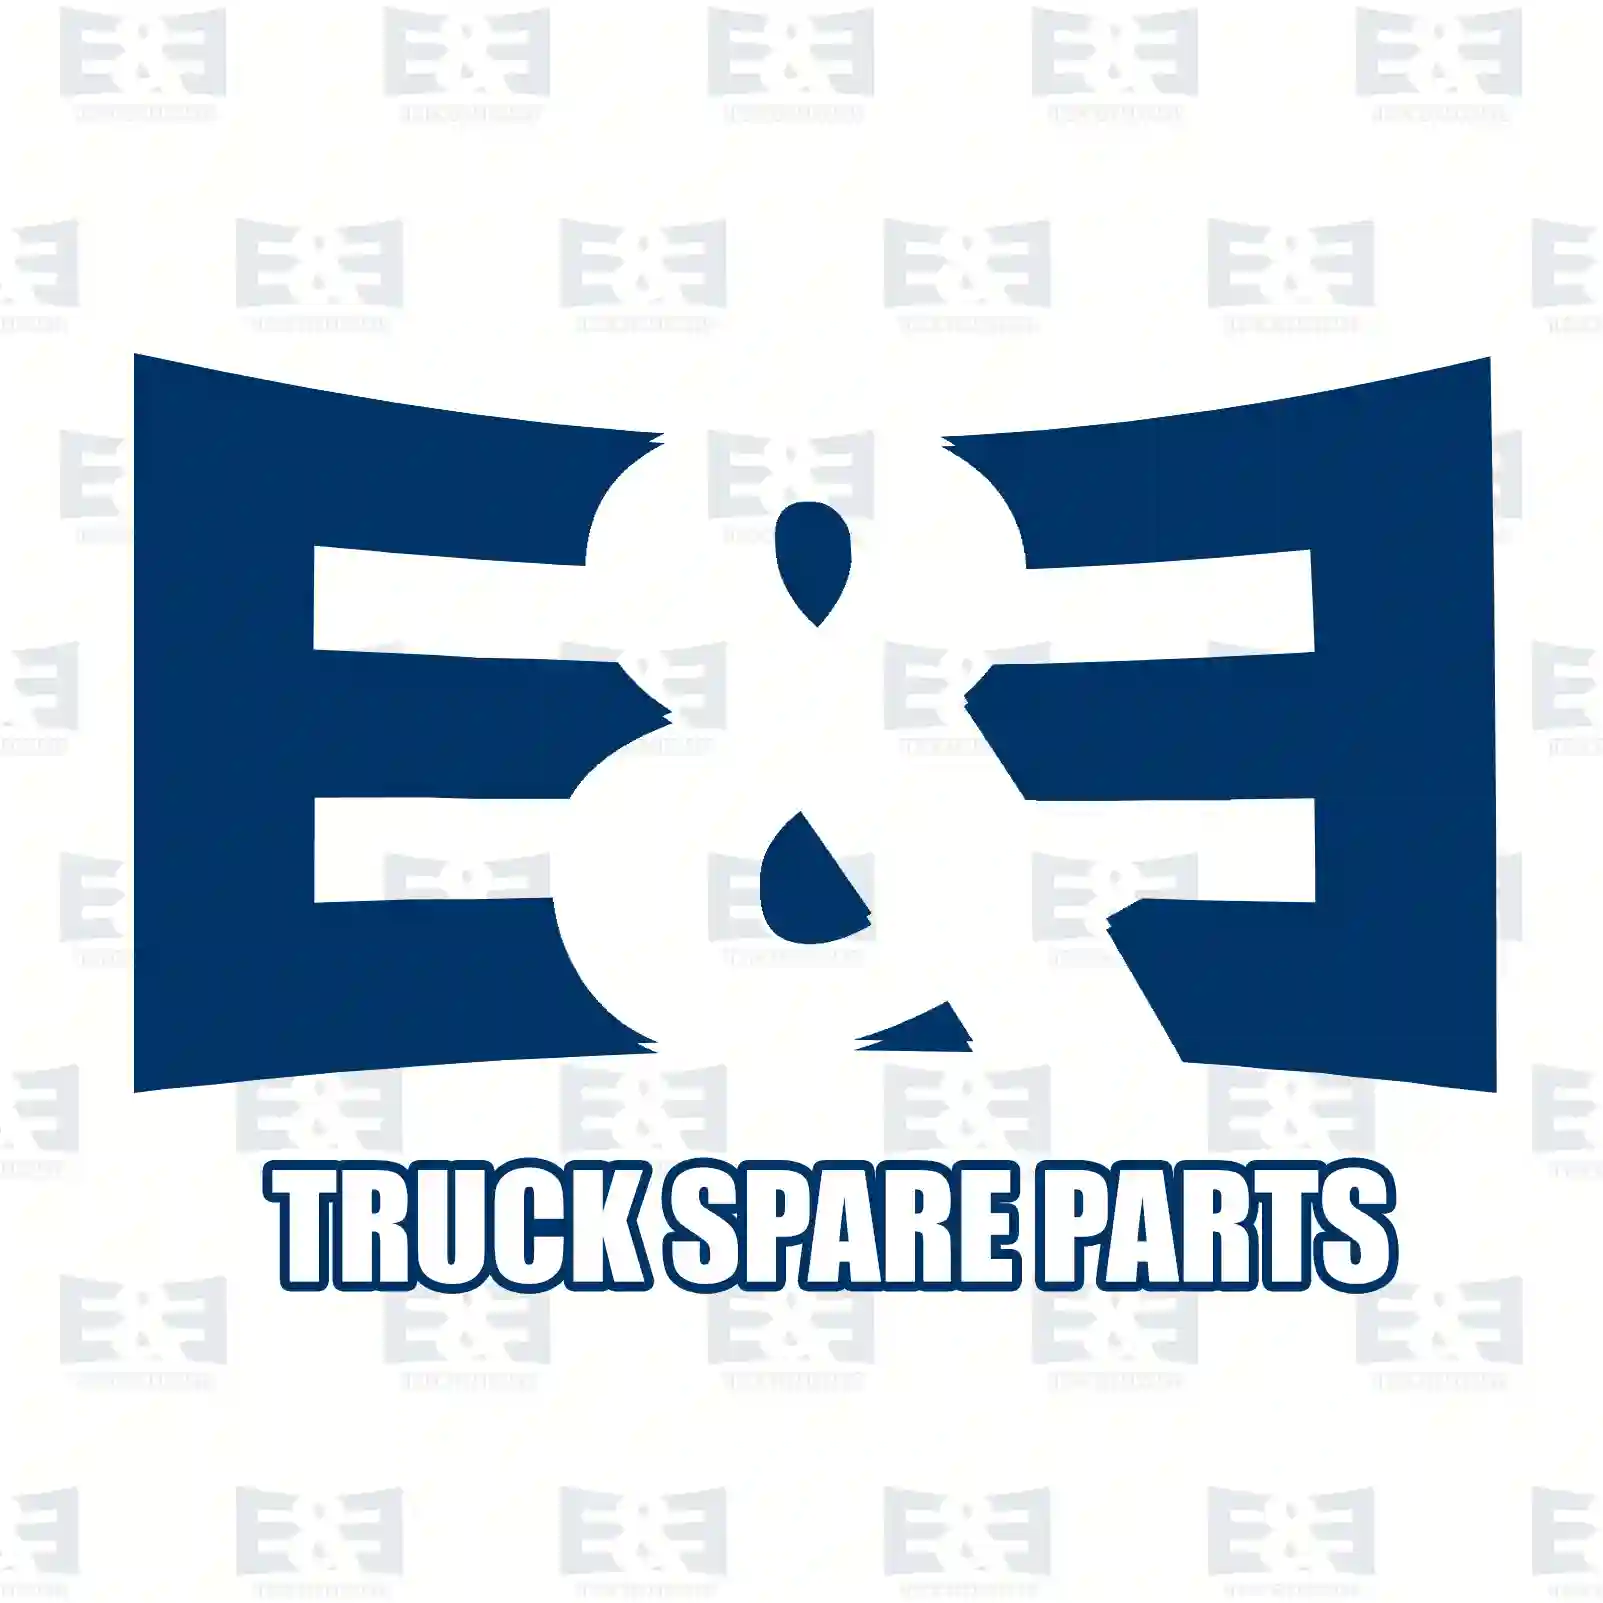 Brake disc, 2E2294881, 93161407, , , , , , , , , ||  2E2294881 E&E Truck Spare Parts | Truck Spare Parts, Auotomotive Spare Parts Brake disc, 2E2294881, 93161407, , , , , , , , , ||  2E2294881 E&E Truck Spare Parts | Truck Spare Parts, Auotomotive Spare Parts